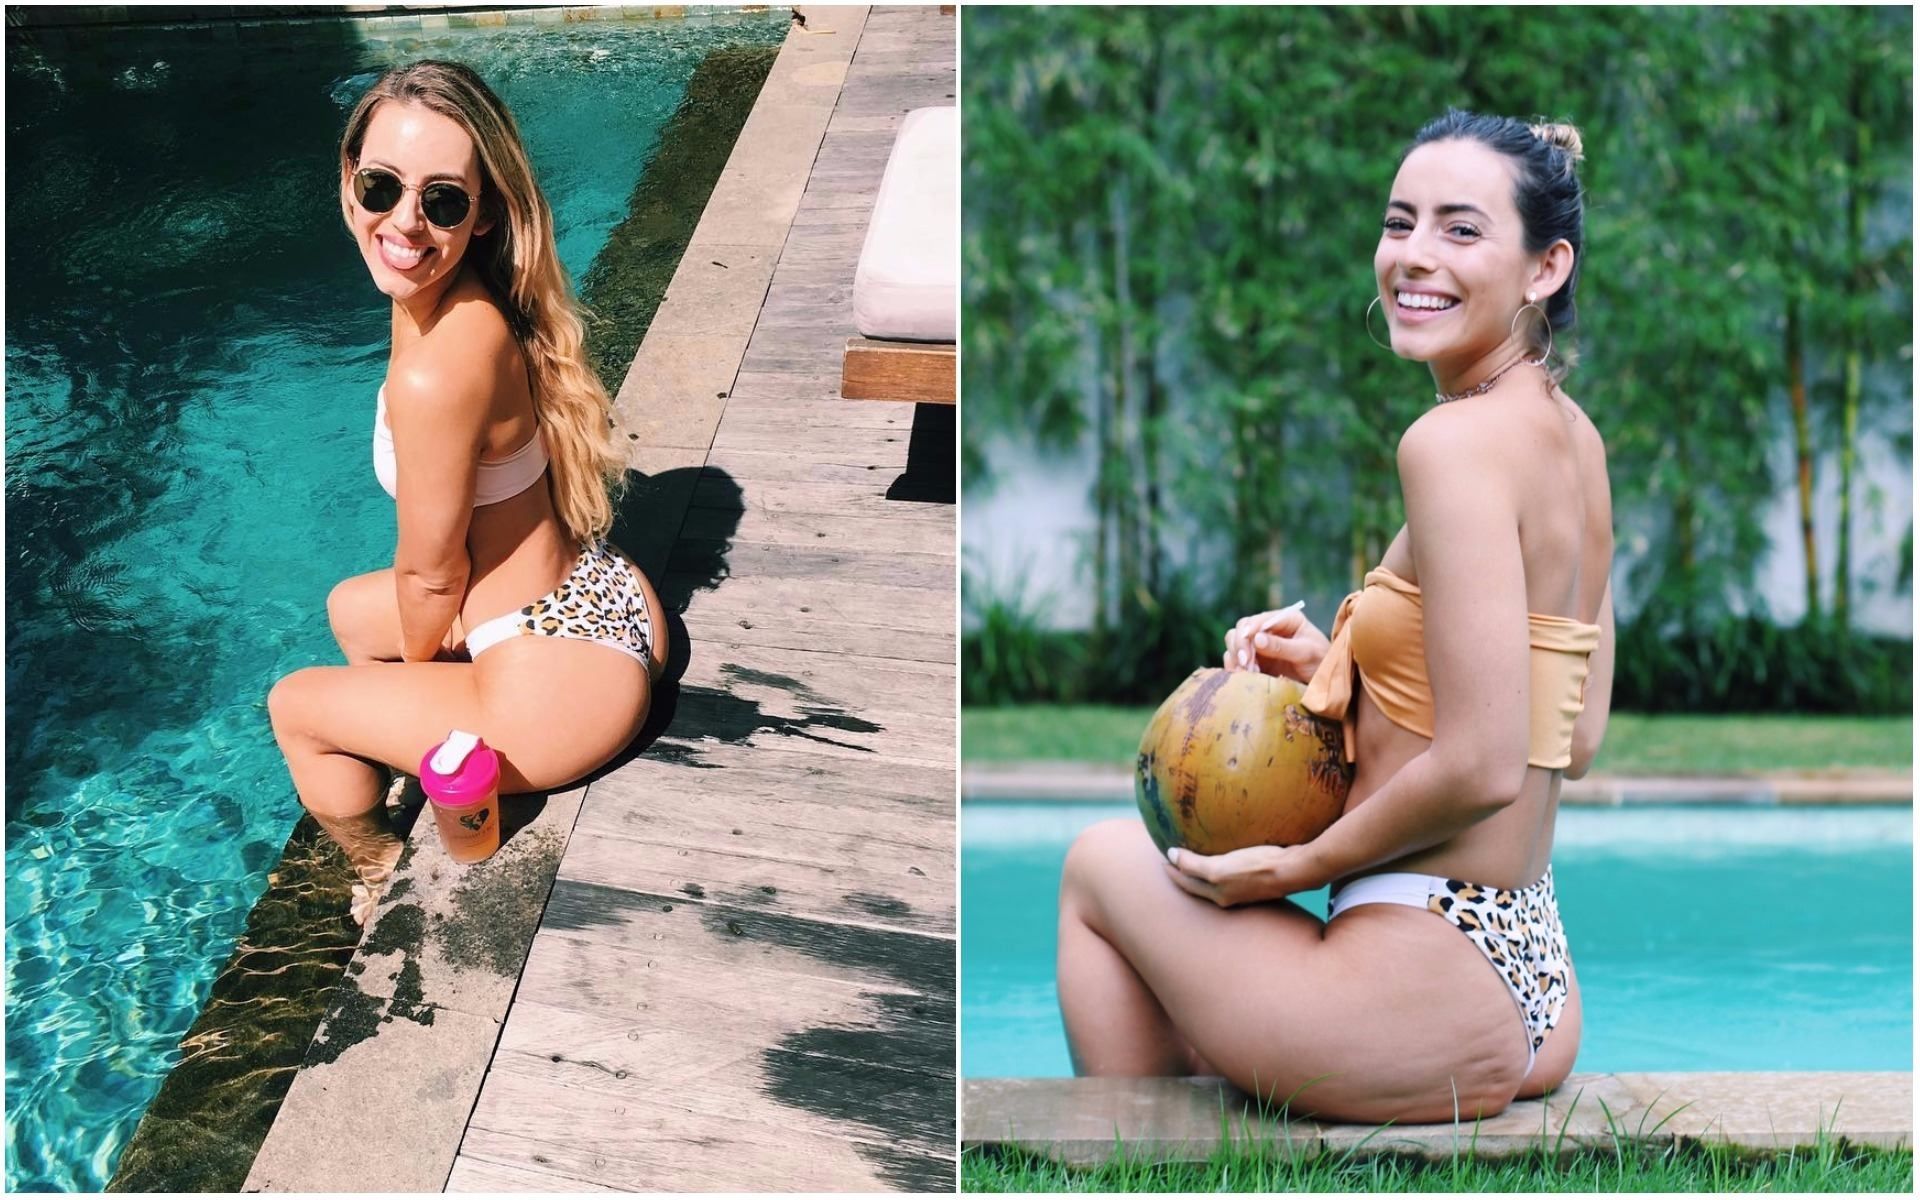 Как нас обманывают в Instagram: фитнес-модель честно показала свой целлюлит на ягодицах